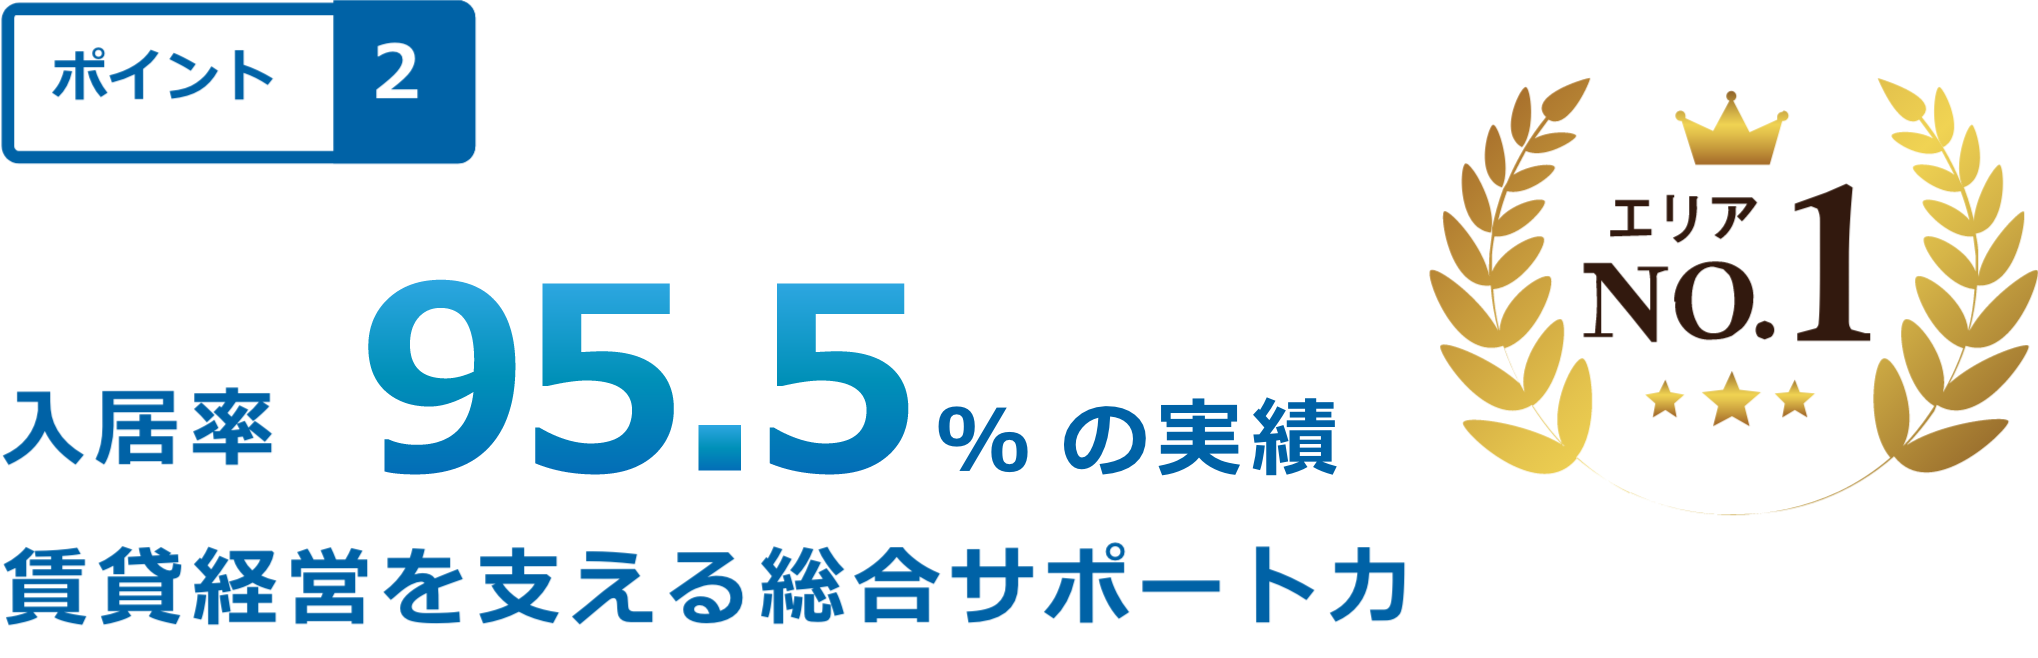 相模原・町田の賃貸管理会社は株式会社オリバー。エリアトップクラスの管理物件入居率95.5％の実績